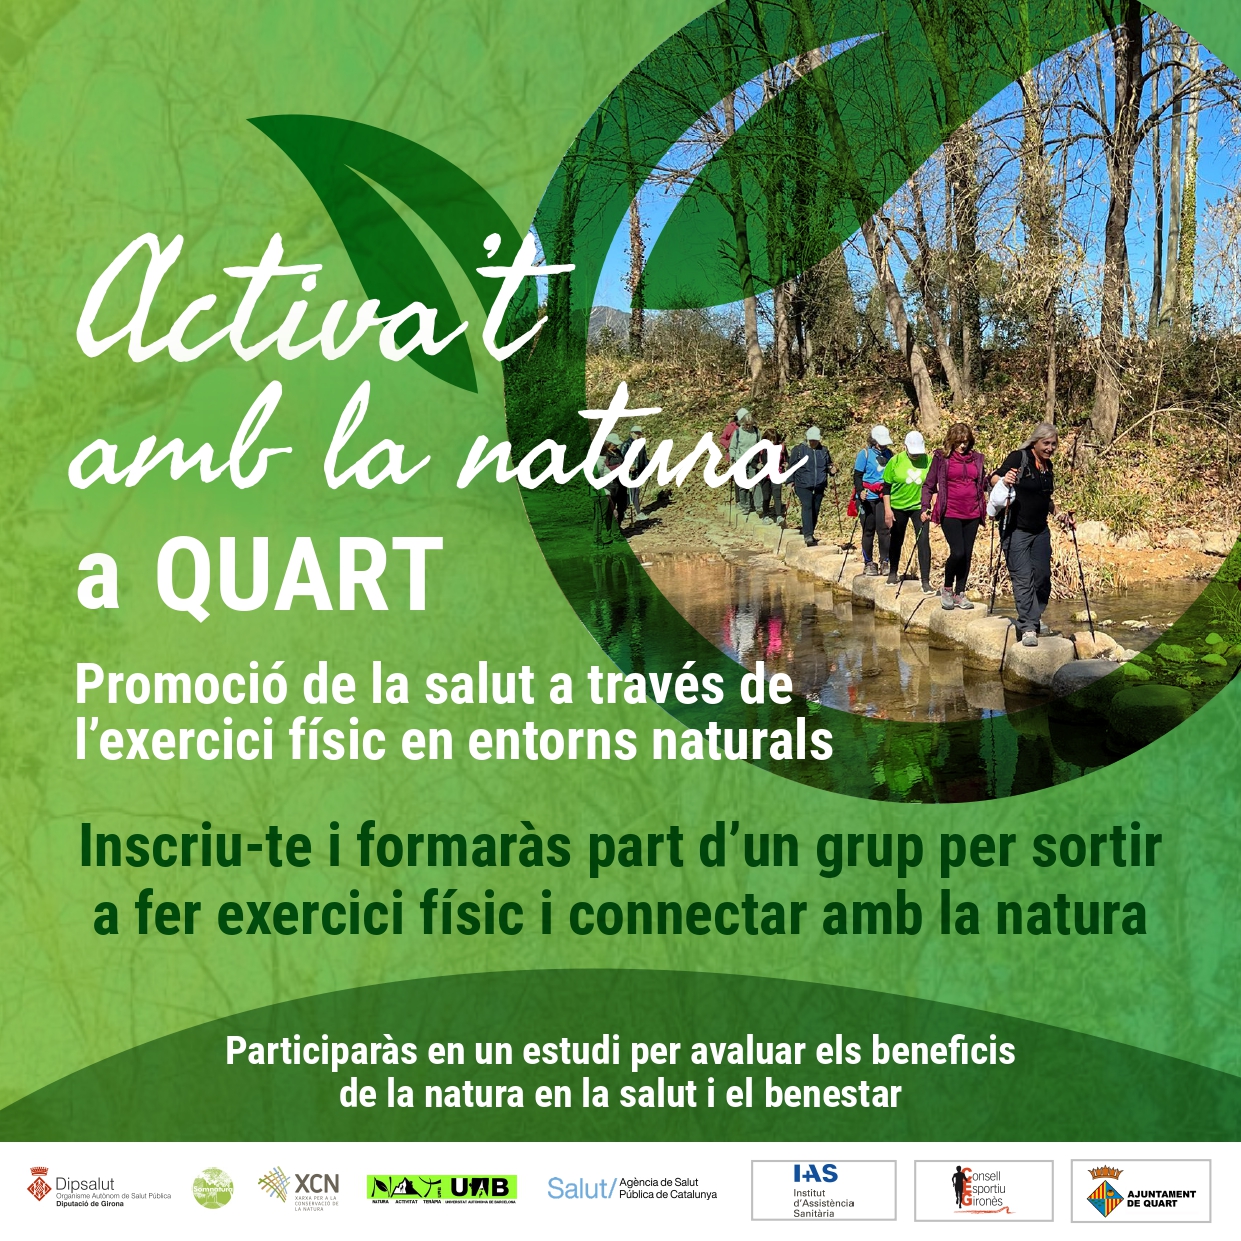 Quart, municipi escollit per la prova pilot d’«Activa’t amb la natura» al Gironès